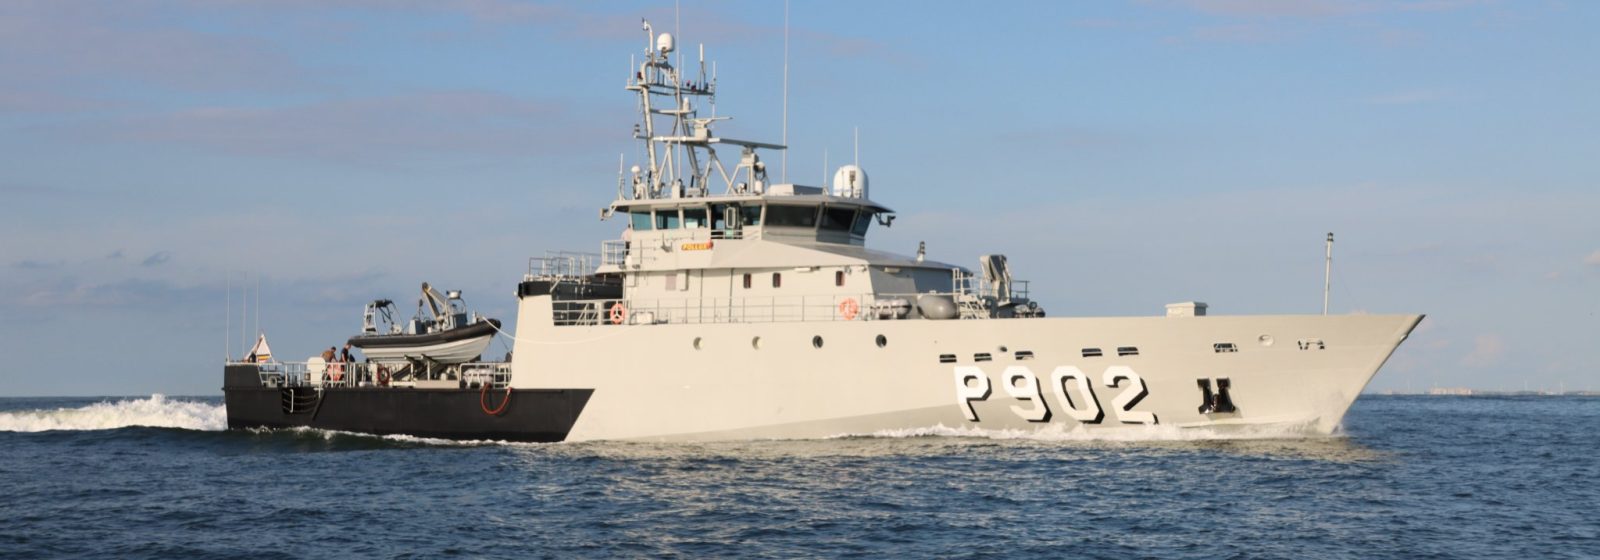 Het patrouilleschip Pollux